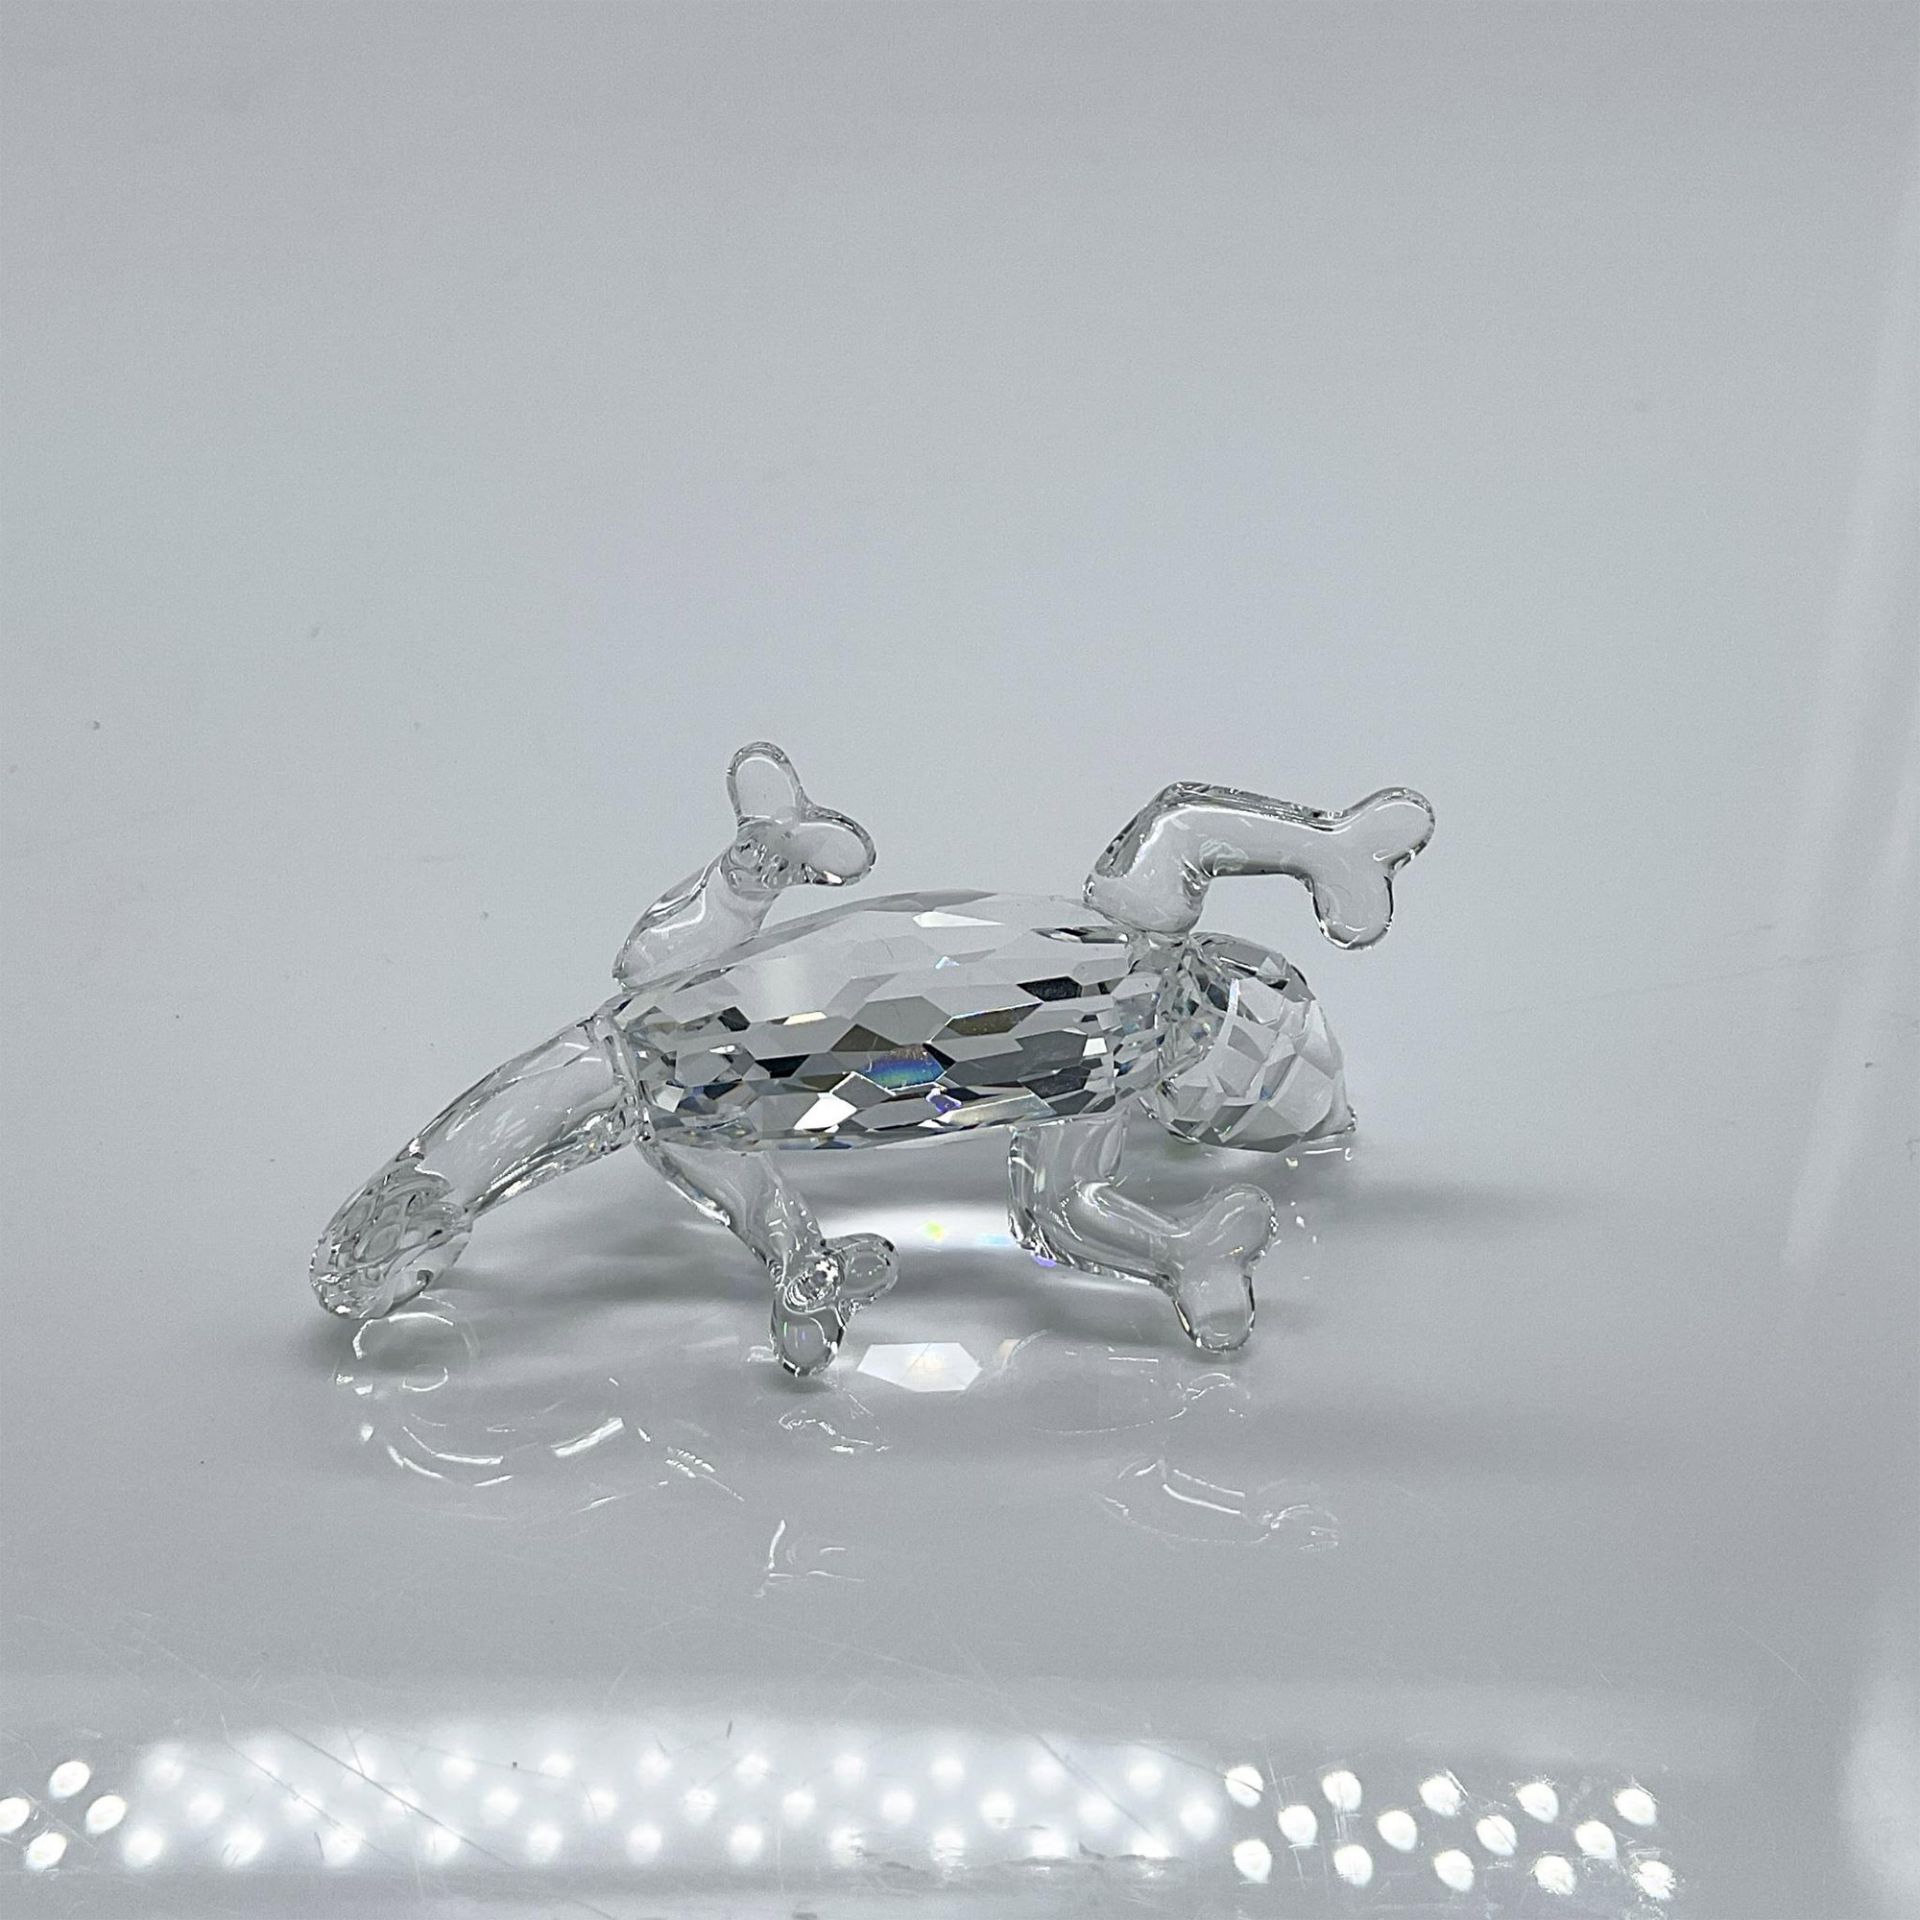 Swarovski Crystal Figurine, Chameleon - Image 3 of 4